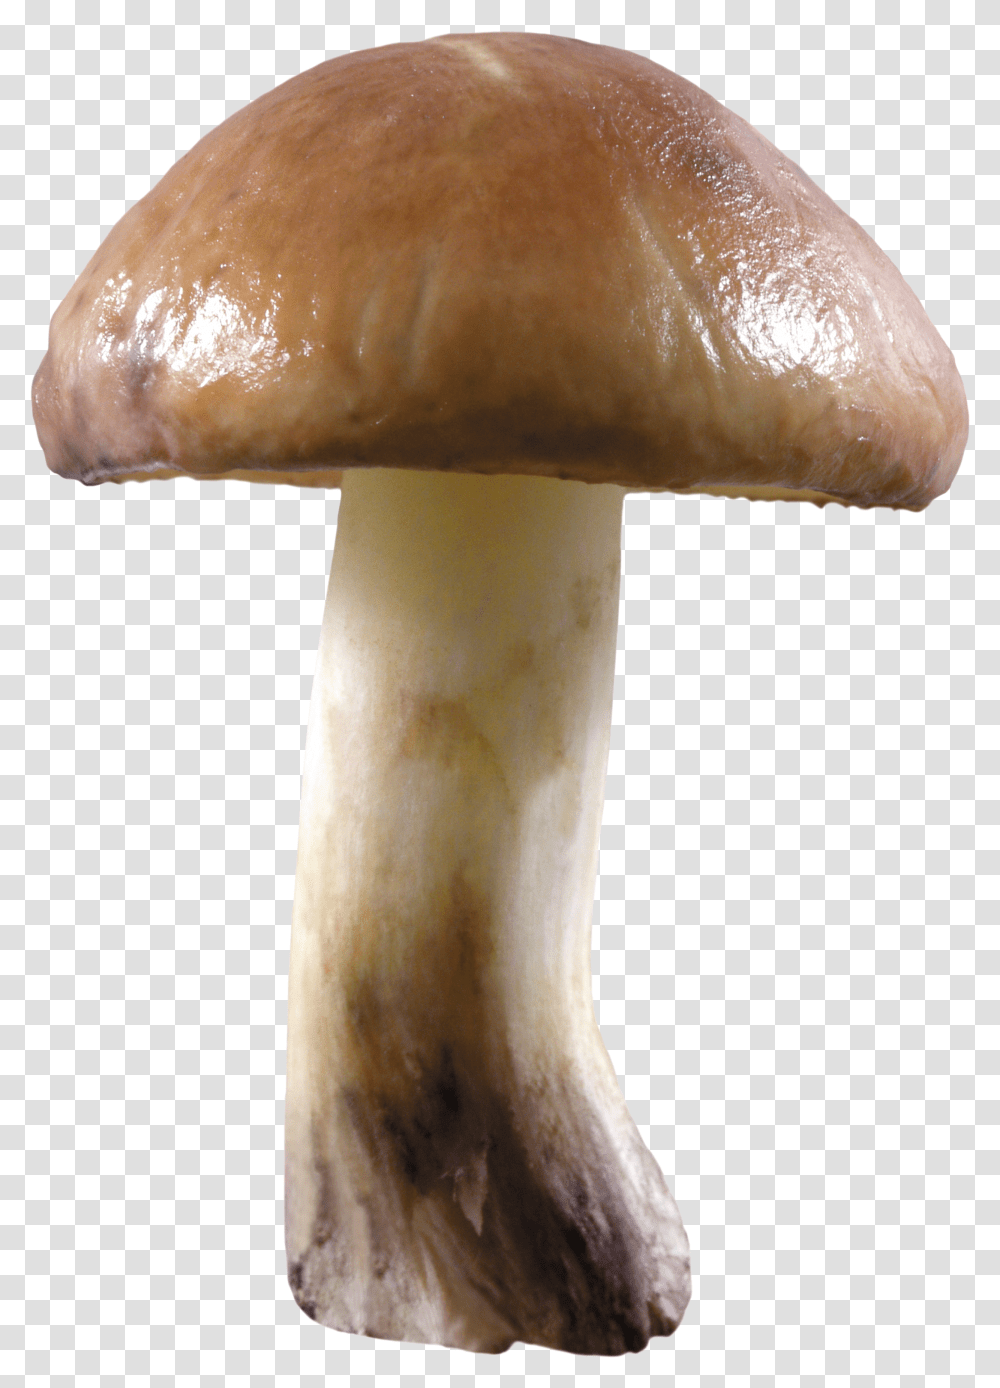 Mushroom Image For Free Download Background Mushroom Transparent Png